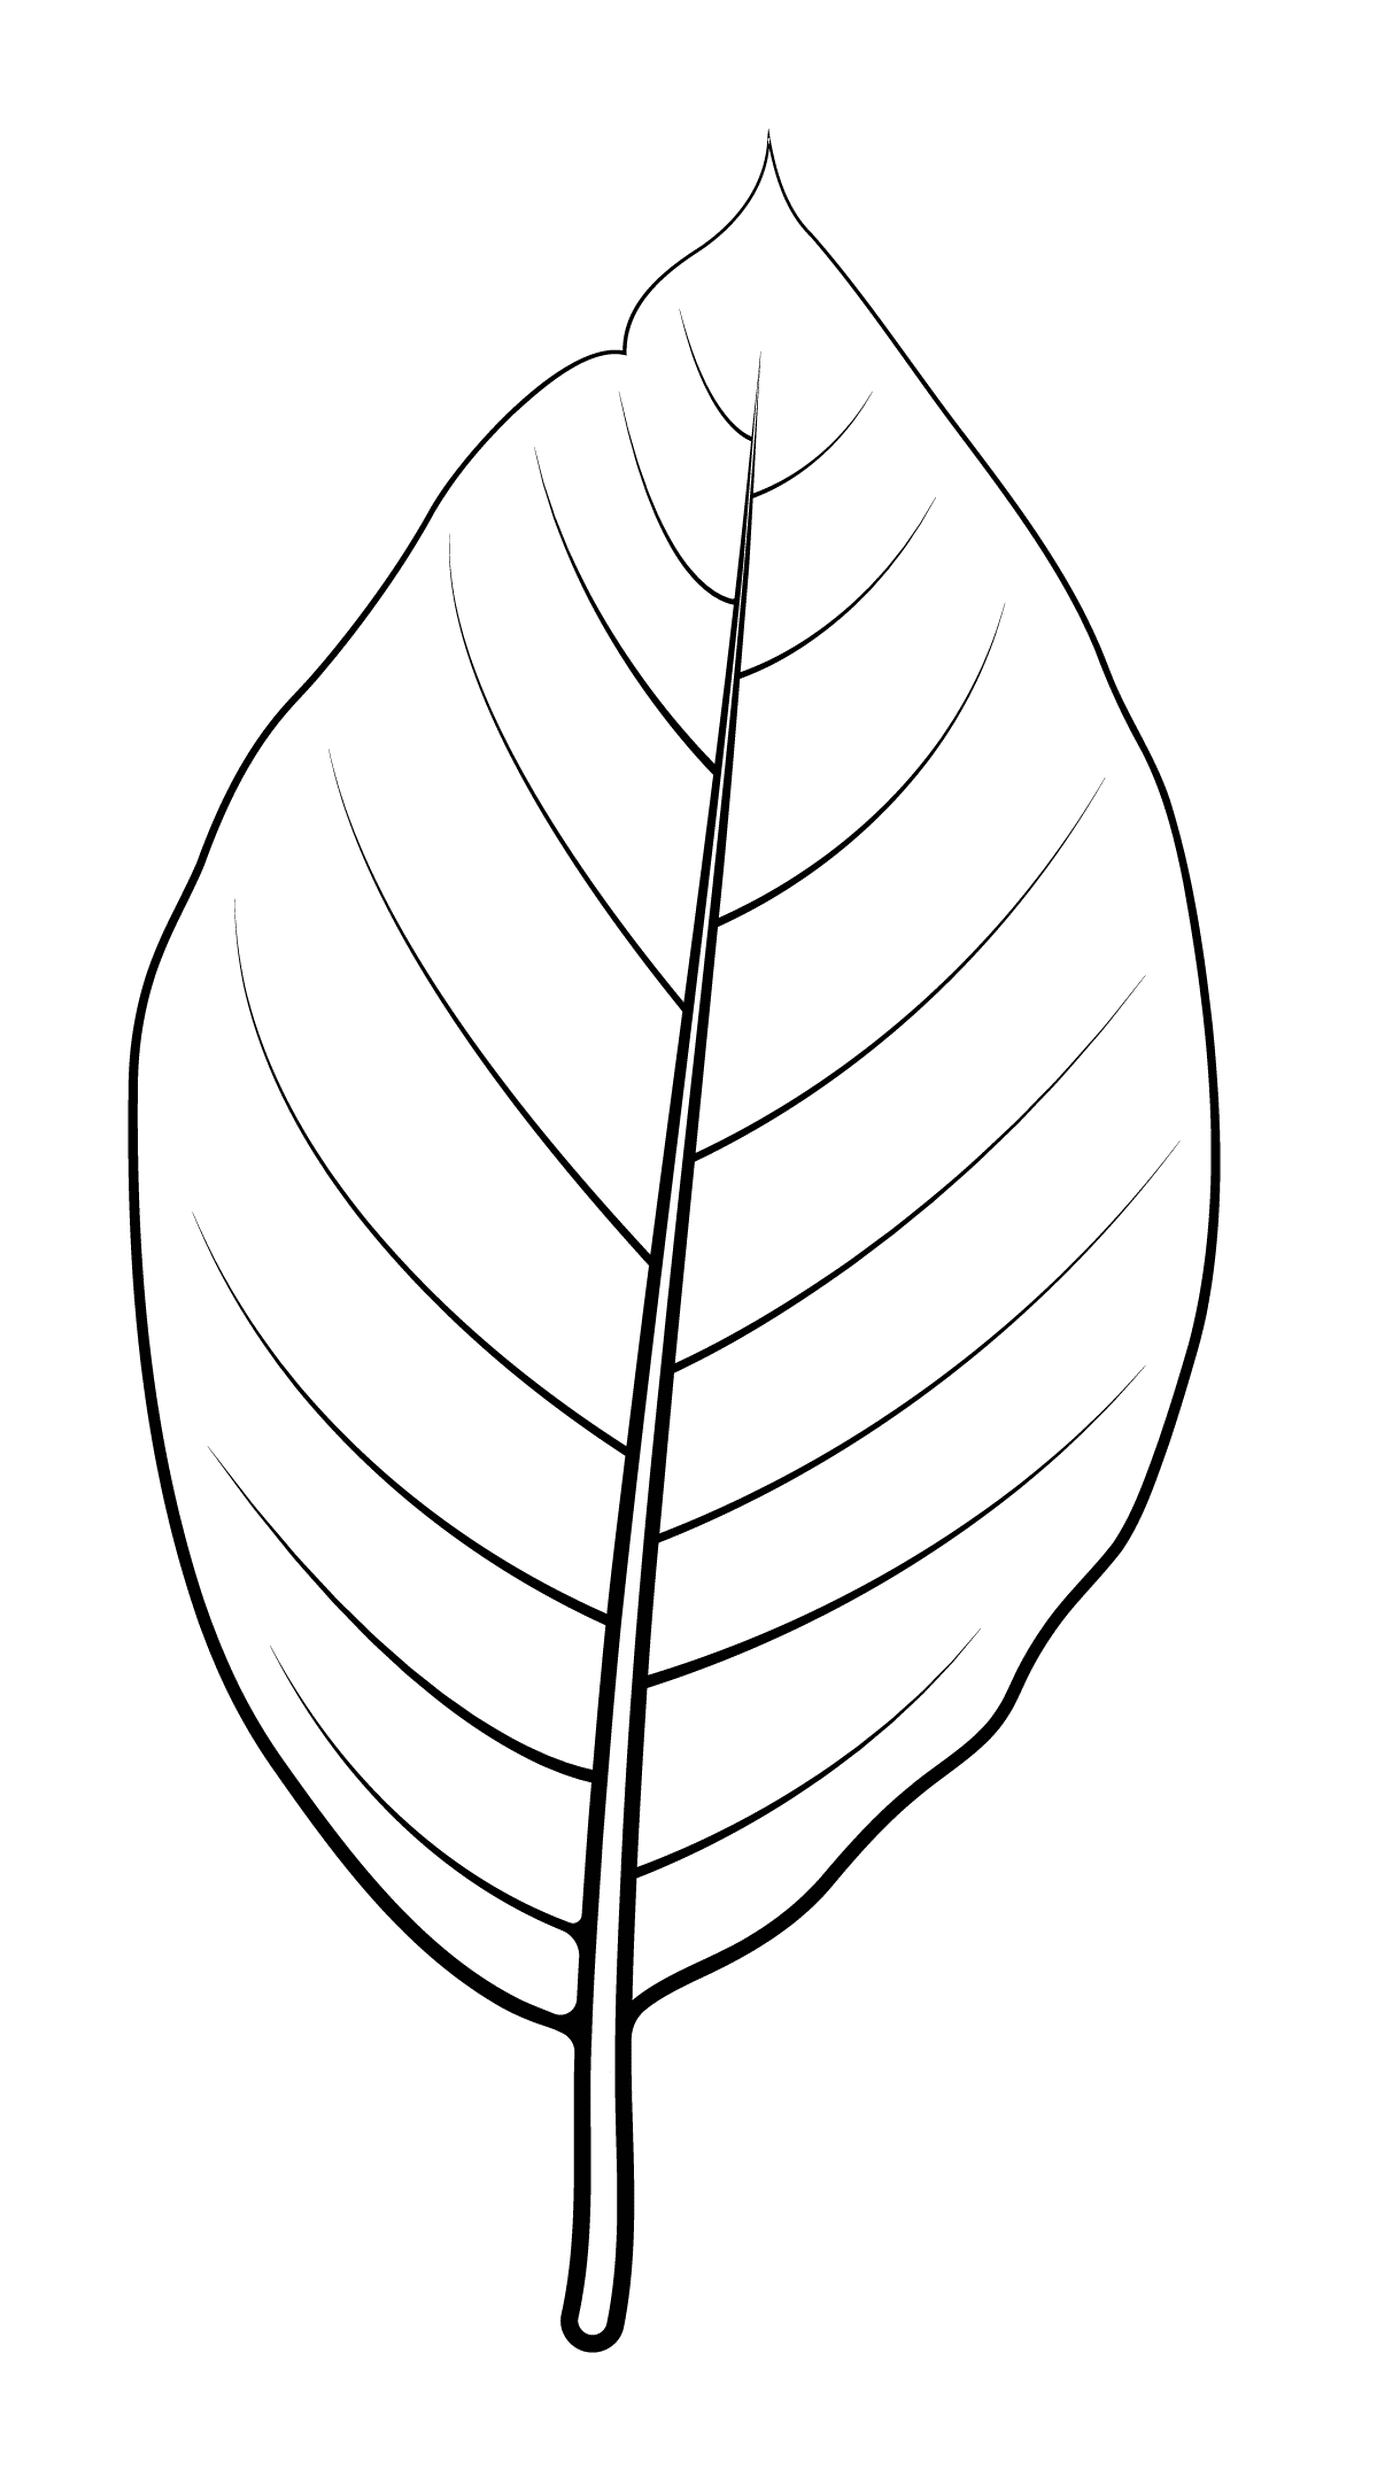  Cucumber leaf 